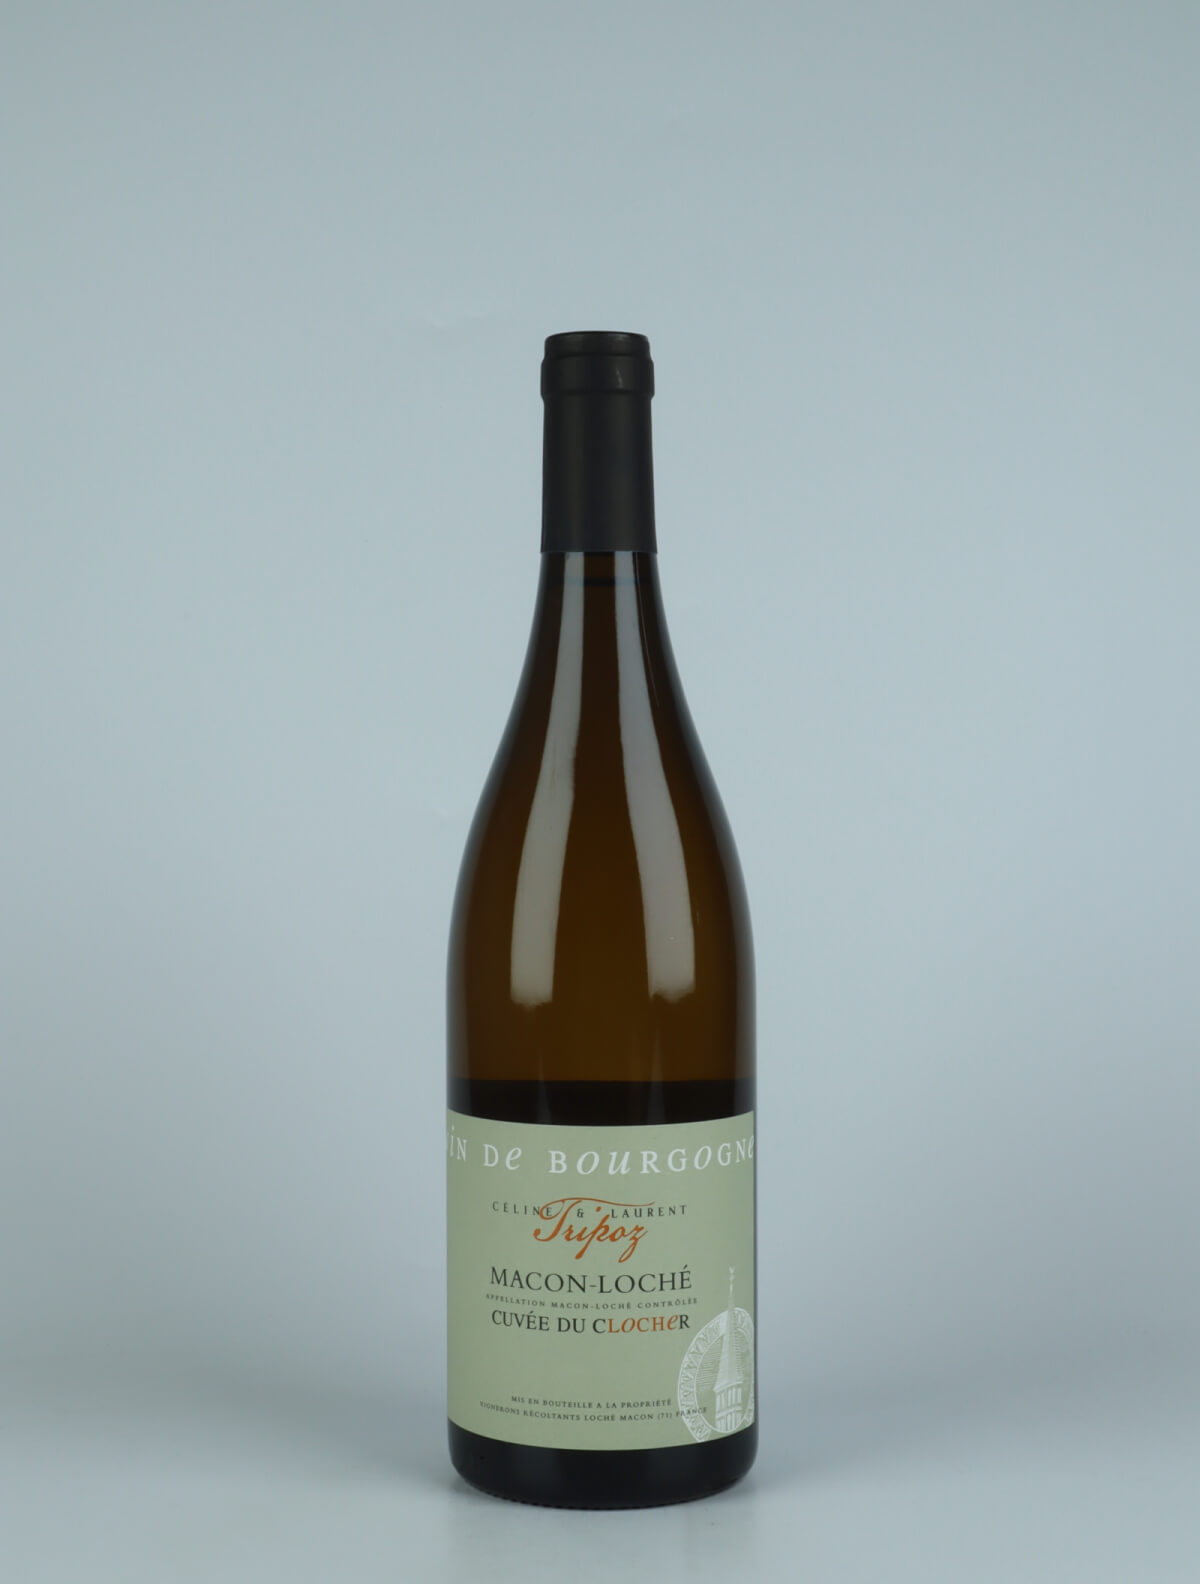 A bottle 2021 Mâcon-Loché - Cuvée du Clocher White wine from Céline & Laurent Tripoz, Burgundy in France